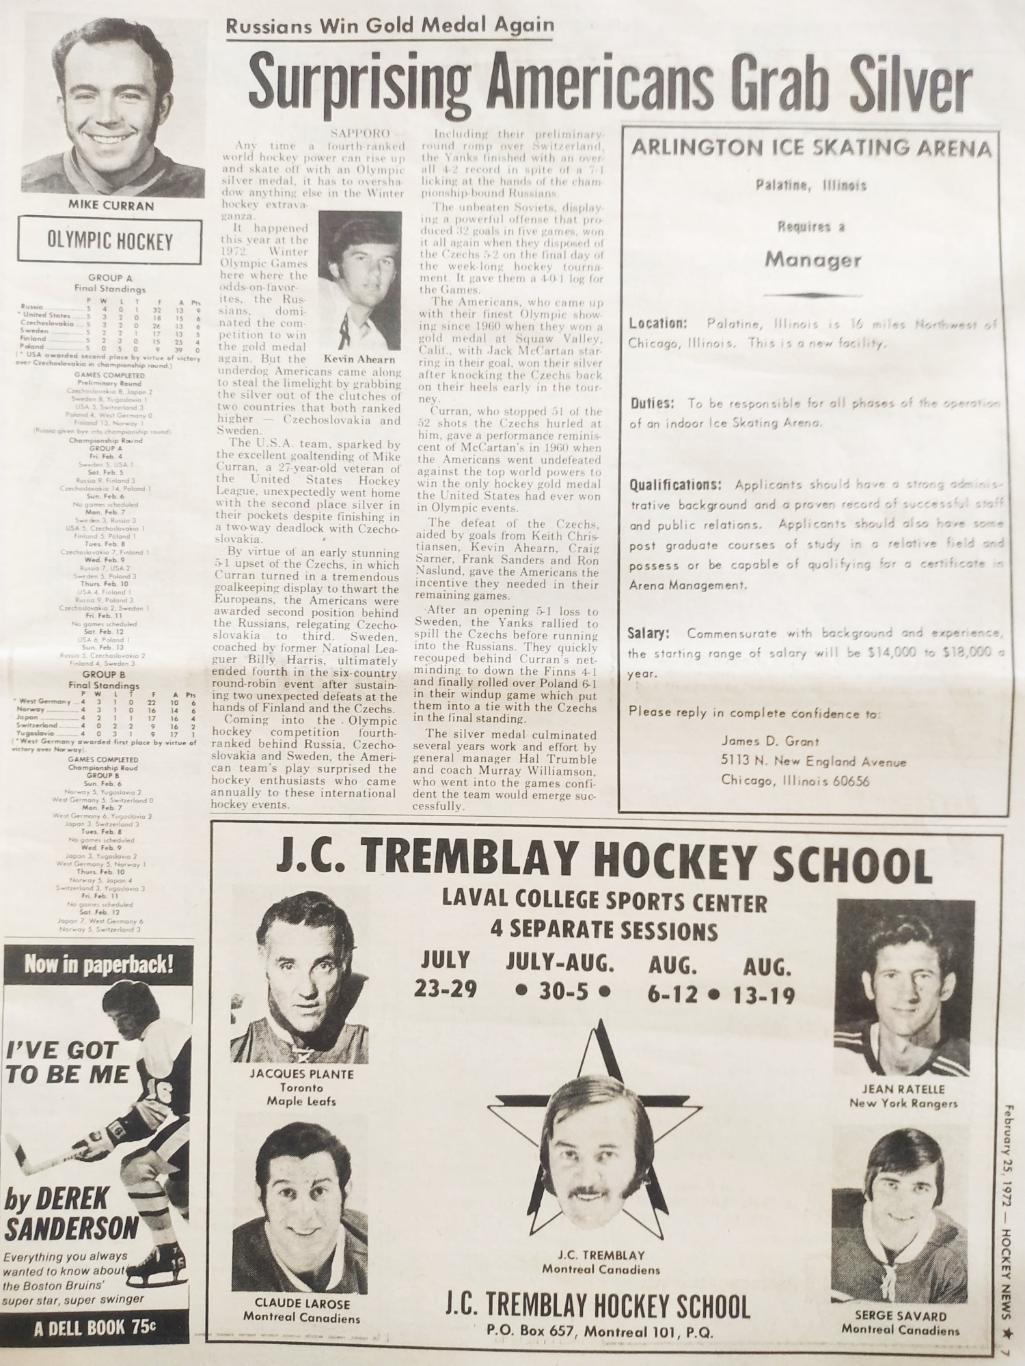 ХОККЕЙ ЖУРНАЛ ЕЖЕНЕДЕЛЬНИК НХЛ НОВОСТИ ХОККЕЯ FEB.25 1972 NHL THE HOCKEY NEWS 3